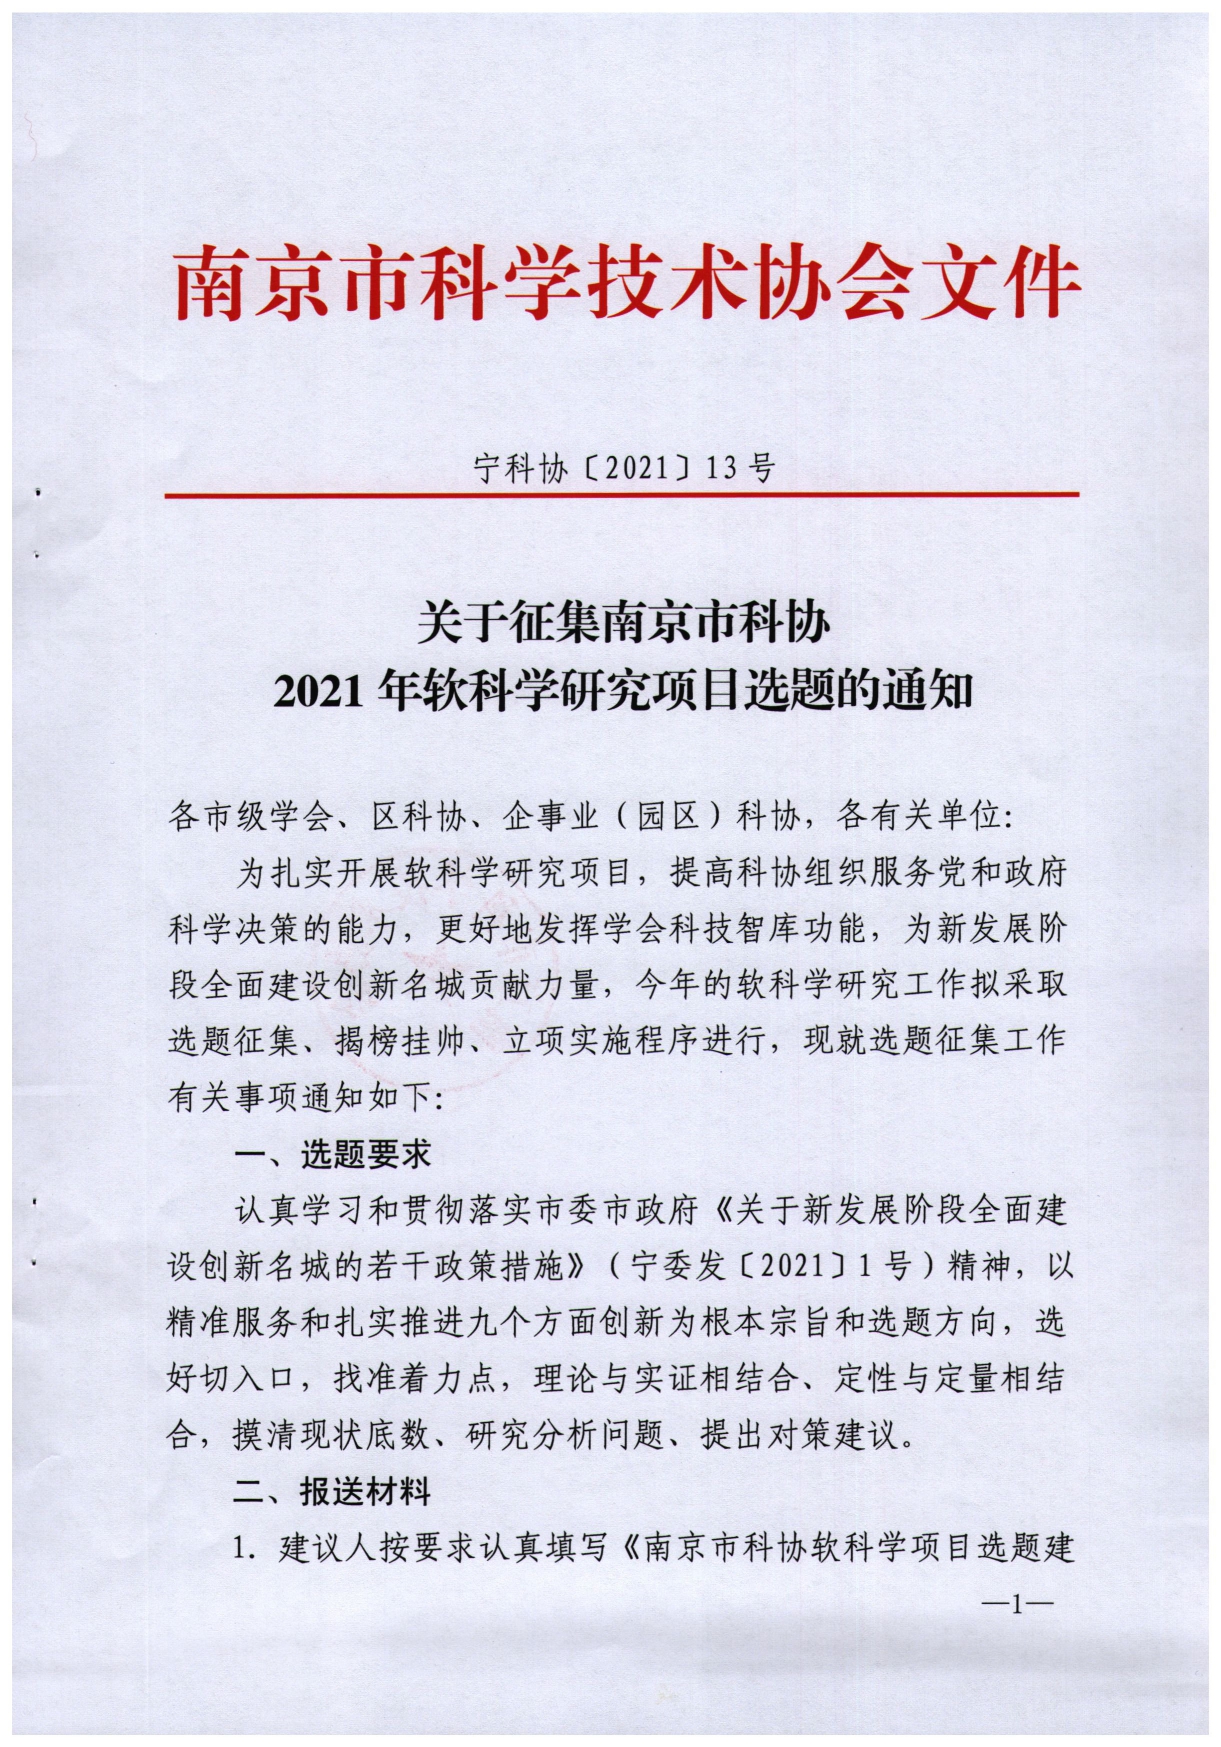 宁科协〔2021〕13号（关于征集南京市科协2021年软科学研究项目选题的通知）_page-0001.jpg